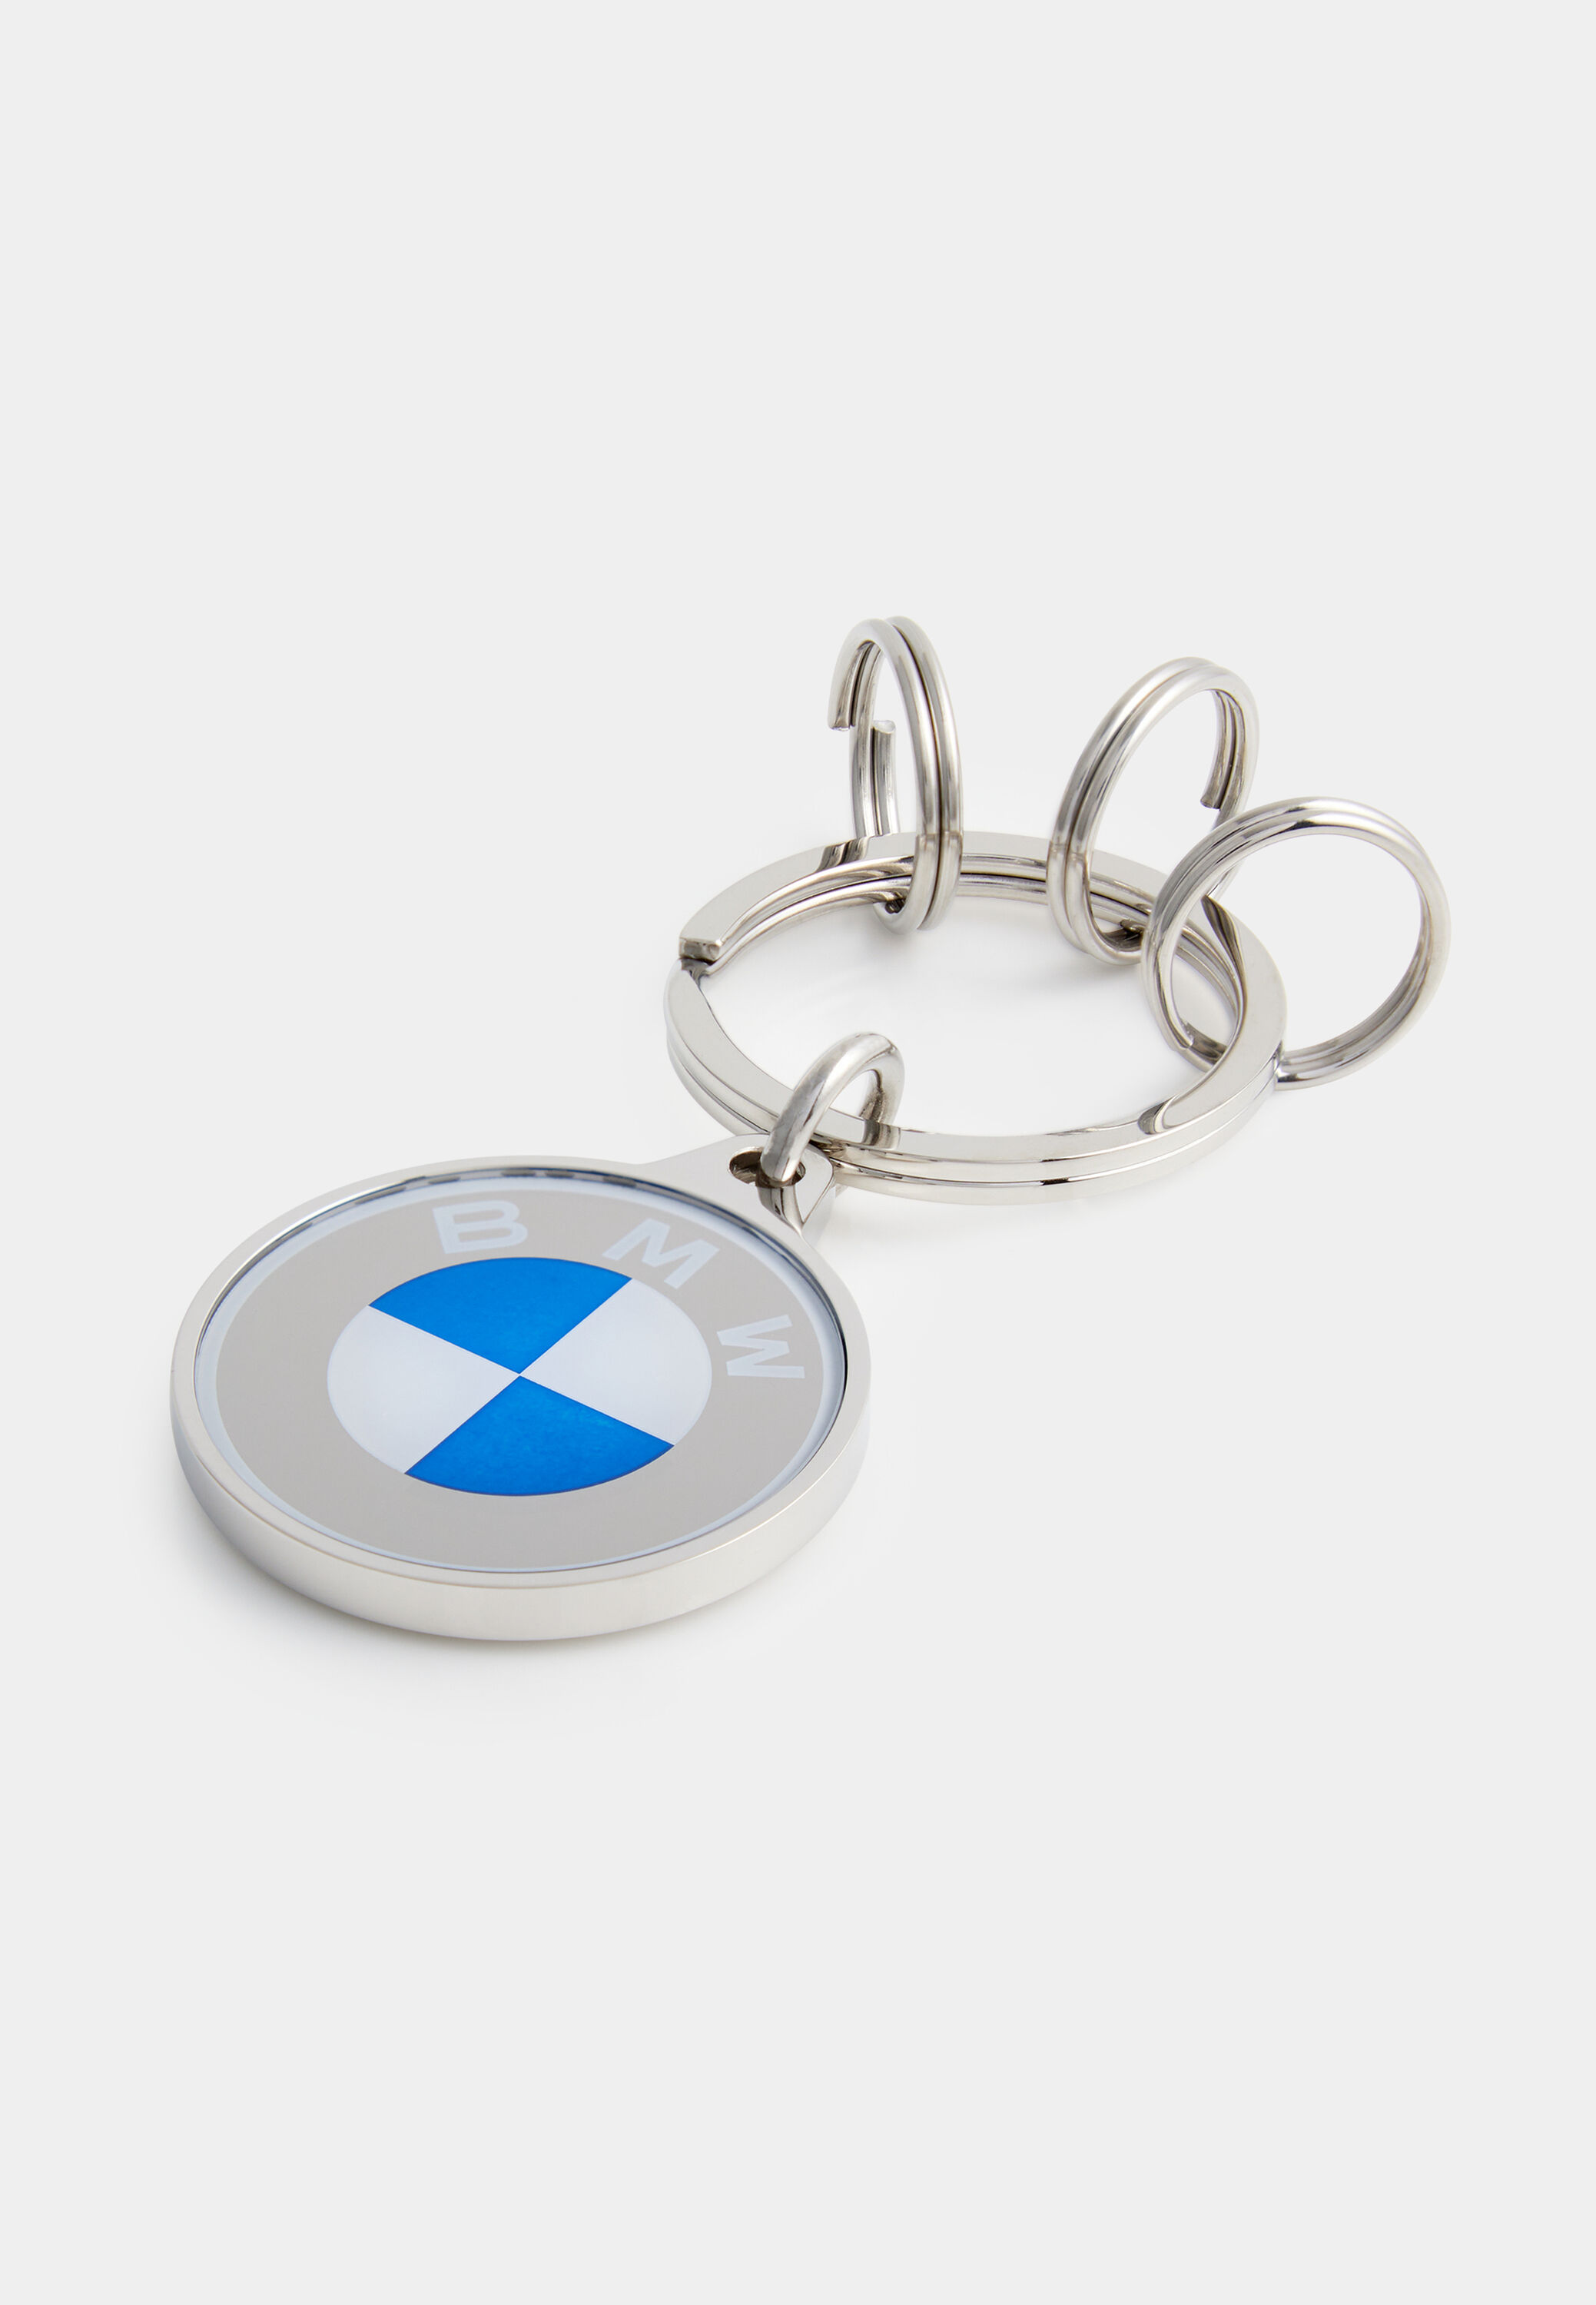 Offen gestaltet für BMW X3 X5 X6 Schlüsselanhänger - BMW X3 X5 X6  Schlüsselanhänger, Schlüsselanhänger & Emaille-Pins Hersteller für  Werbeartikel